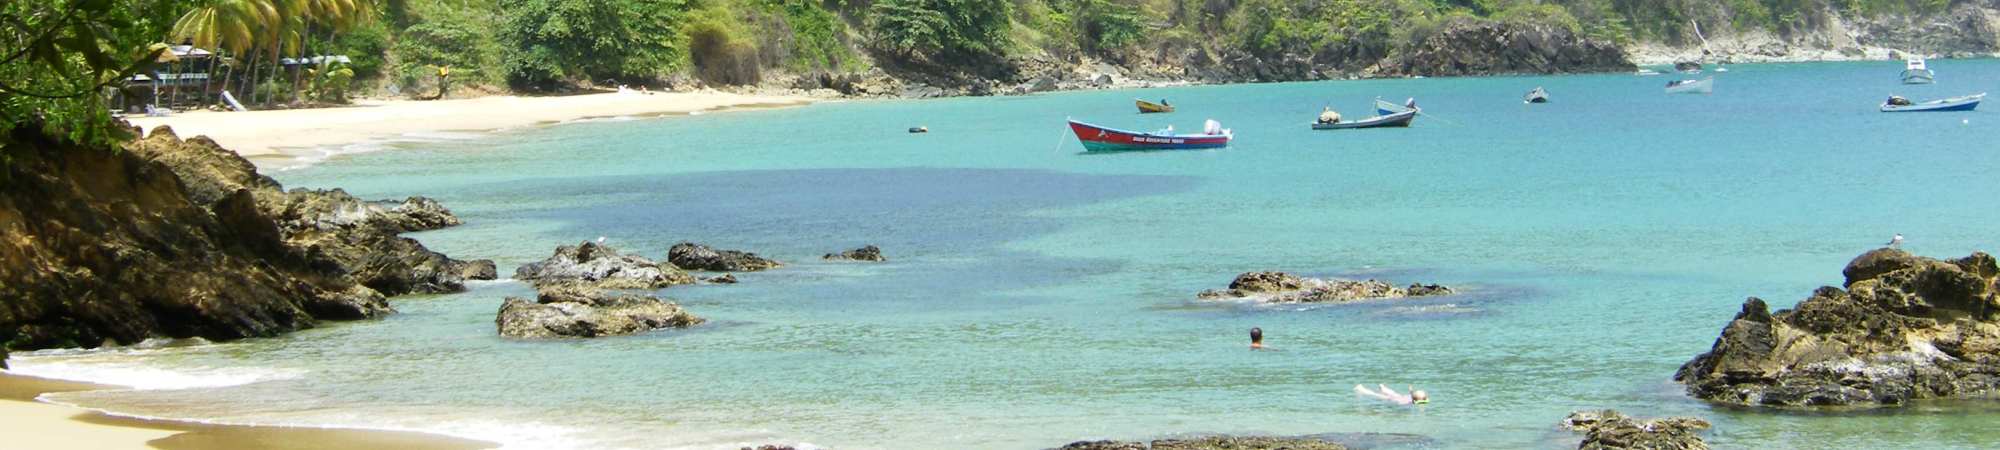 Karibikstrand in der Bucht von Castara, Insel Tobago